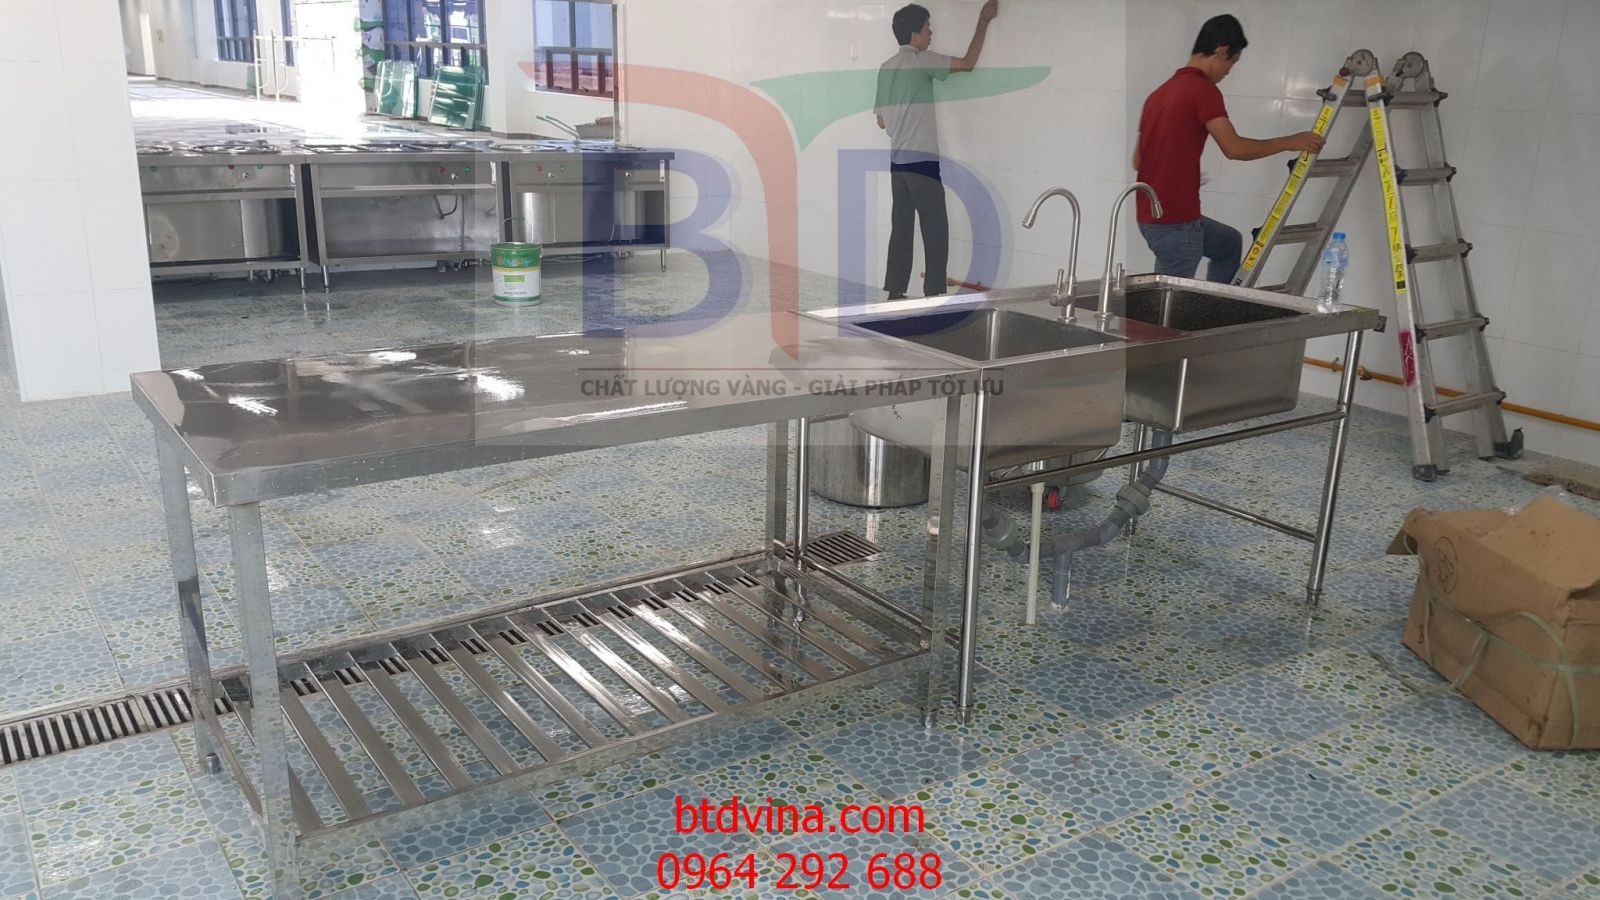 Chậu rửa inox 2 ngăn tại khu bếp nhà máy Hanyang Digitech Vina- Phú Hà- Phú Thọ